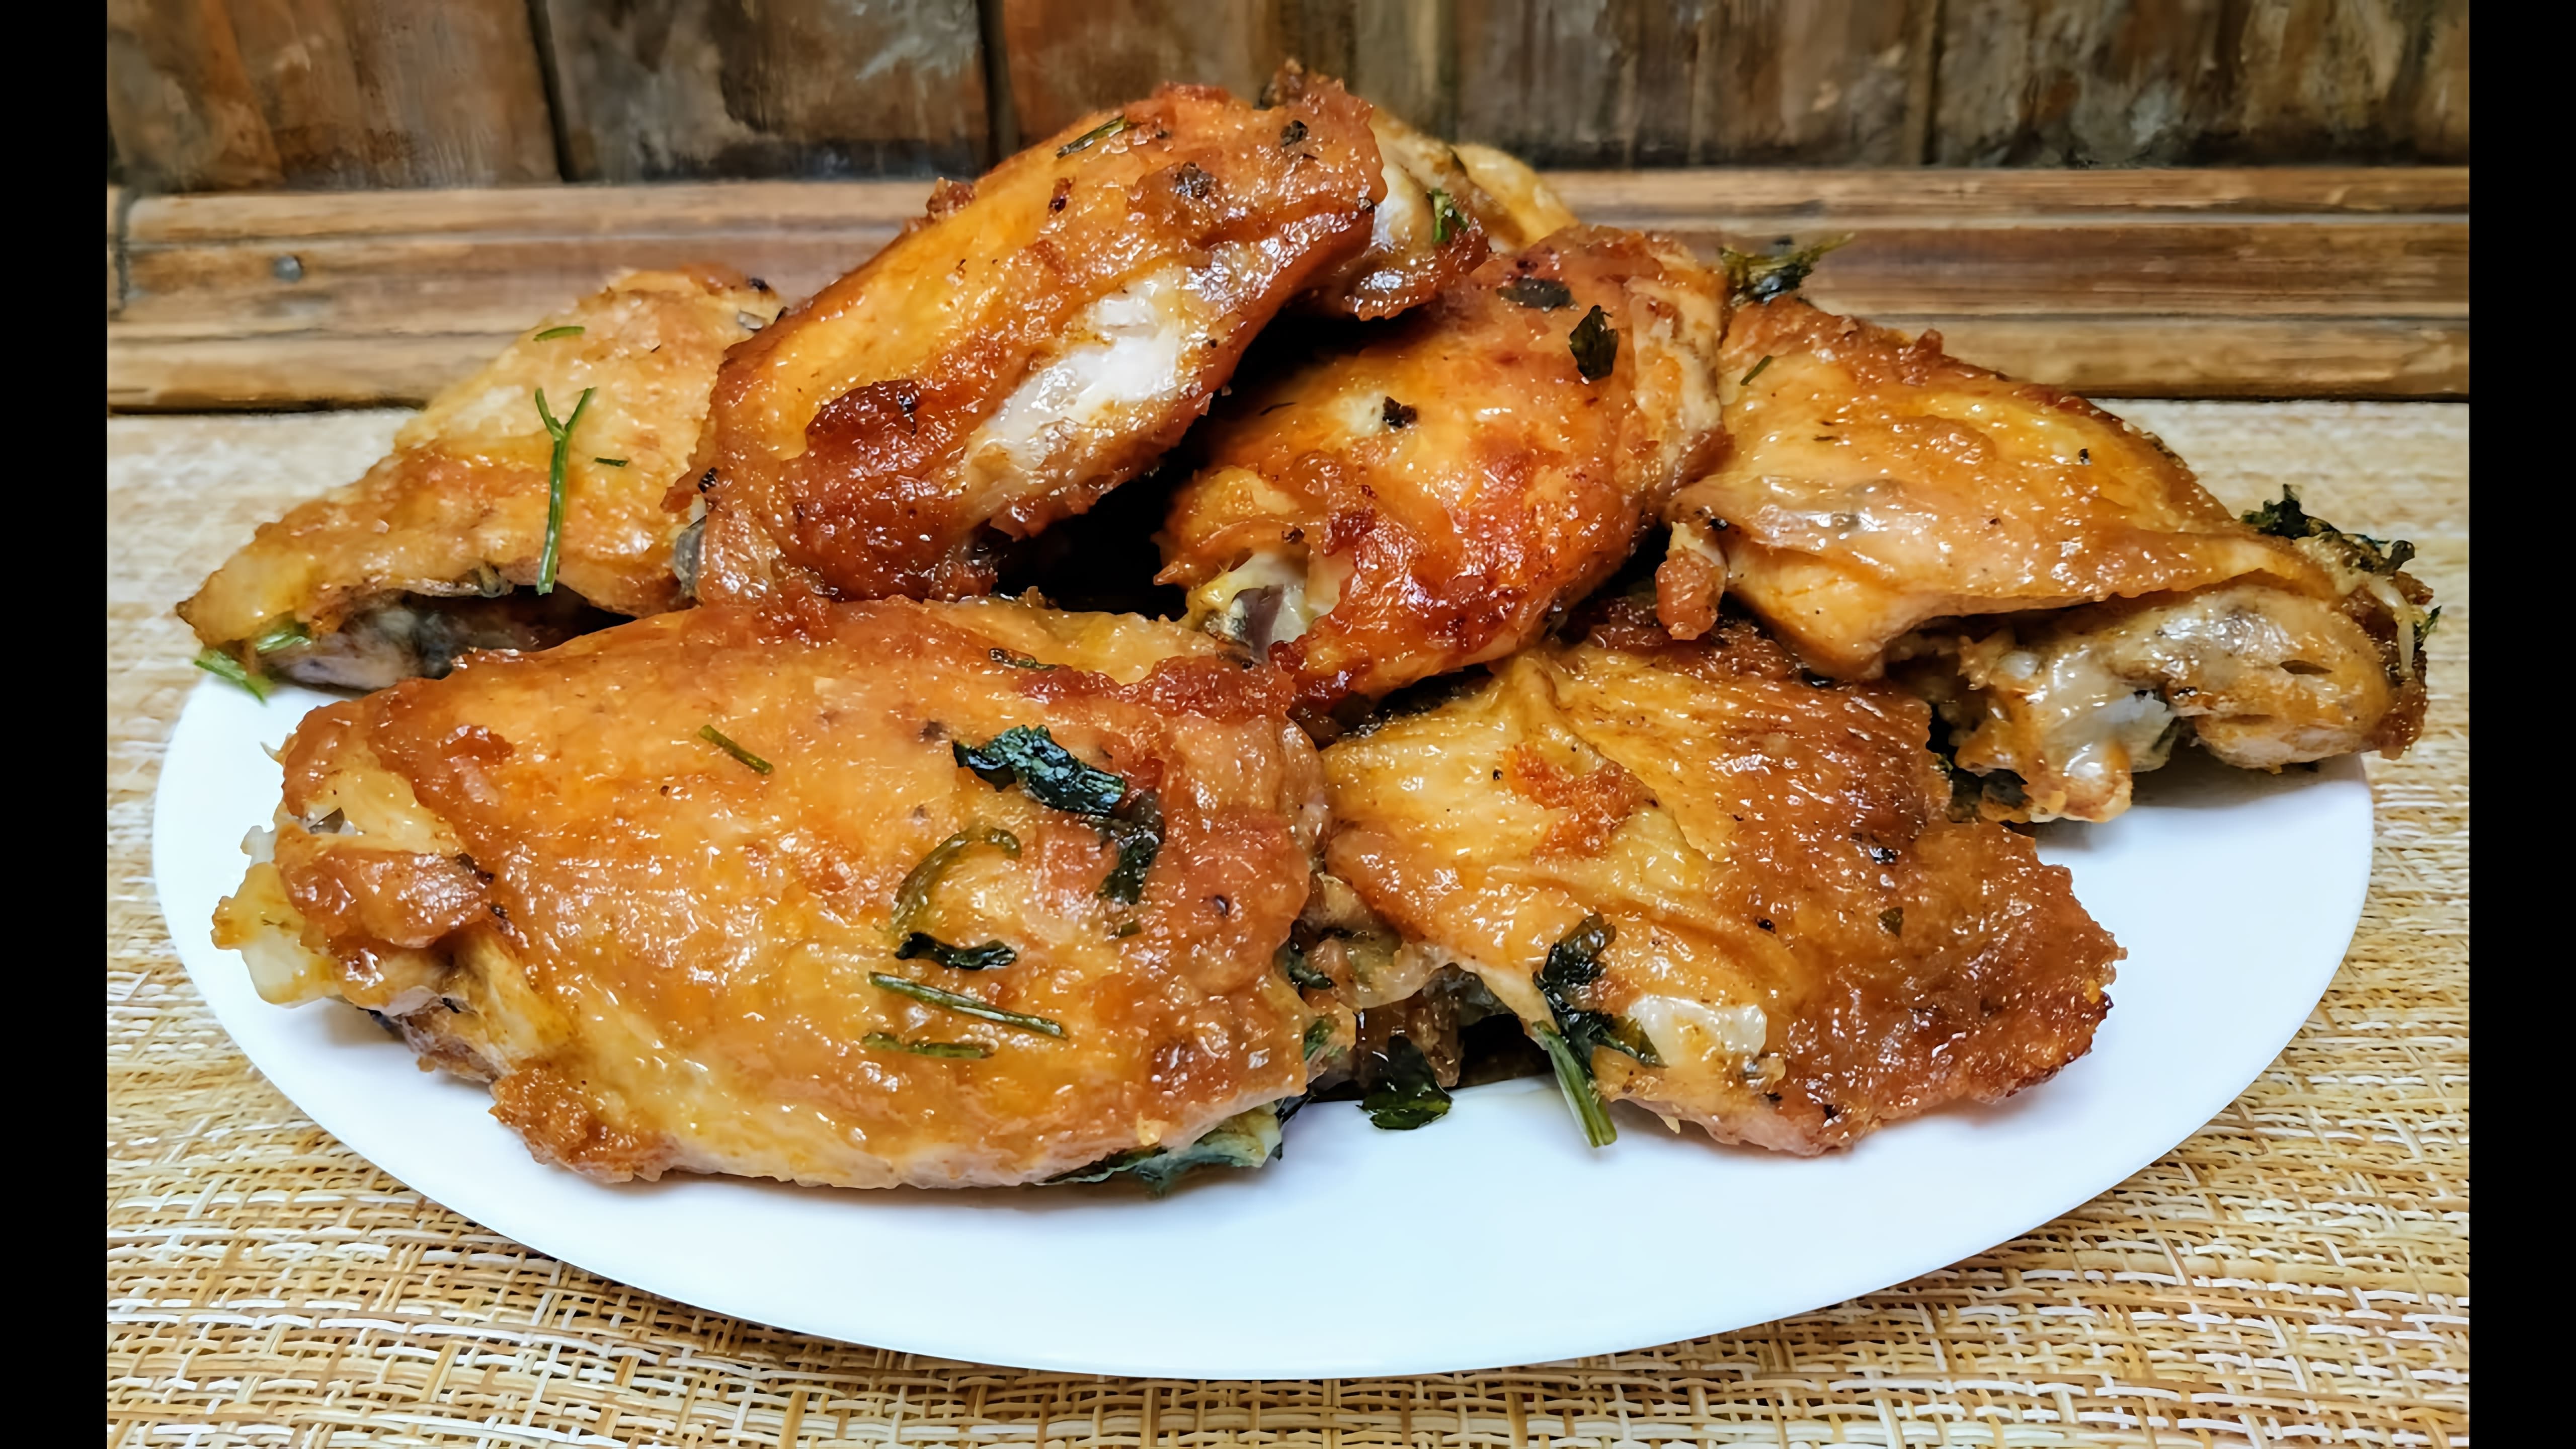 В этом видео демонстрируется рецепт приготовления жареной курицы с поджаристой корочкой и чесночным ароматом